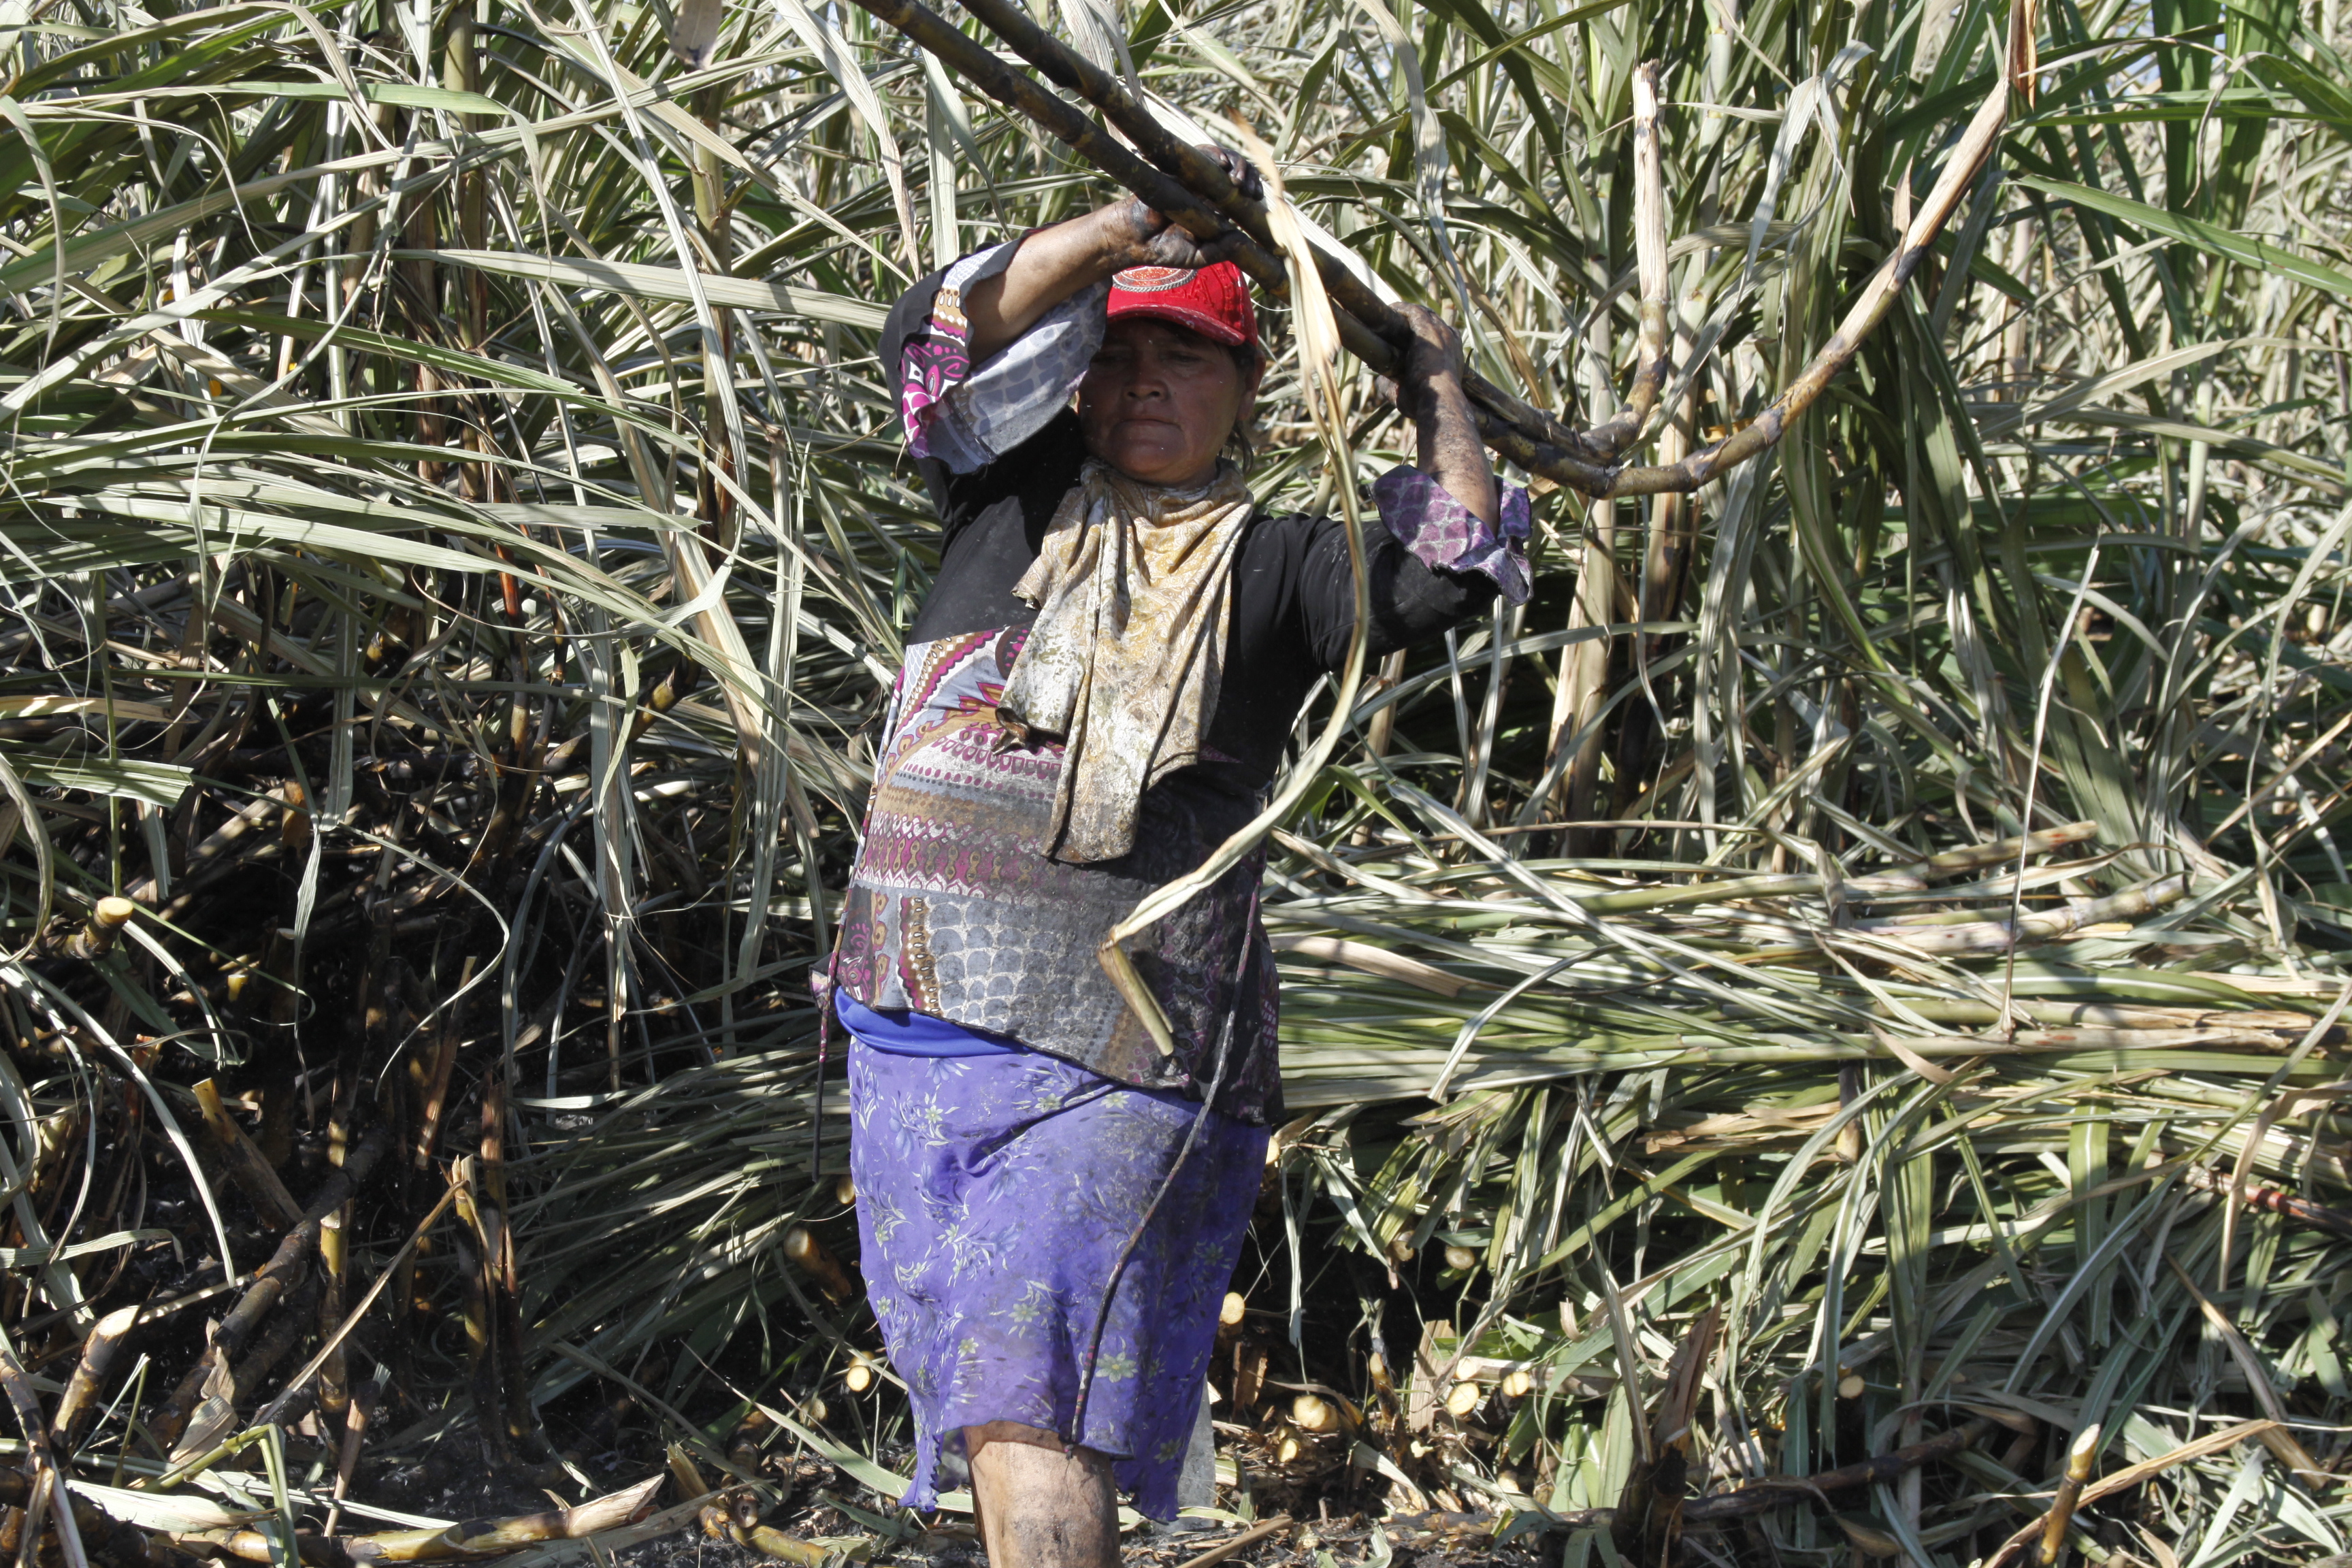 Investigadora de ECOSUR reúne actores agroindustriales del azúcar a favor del trabajo digno